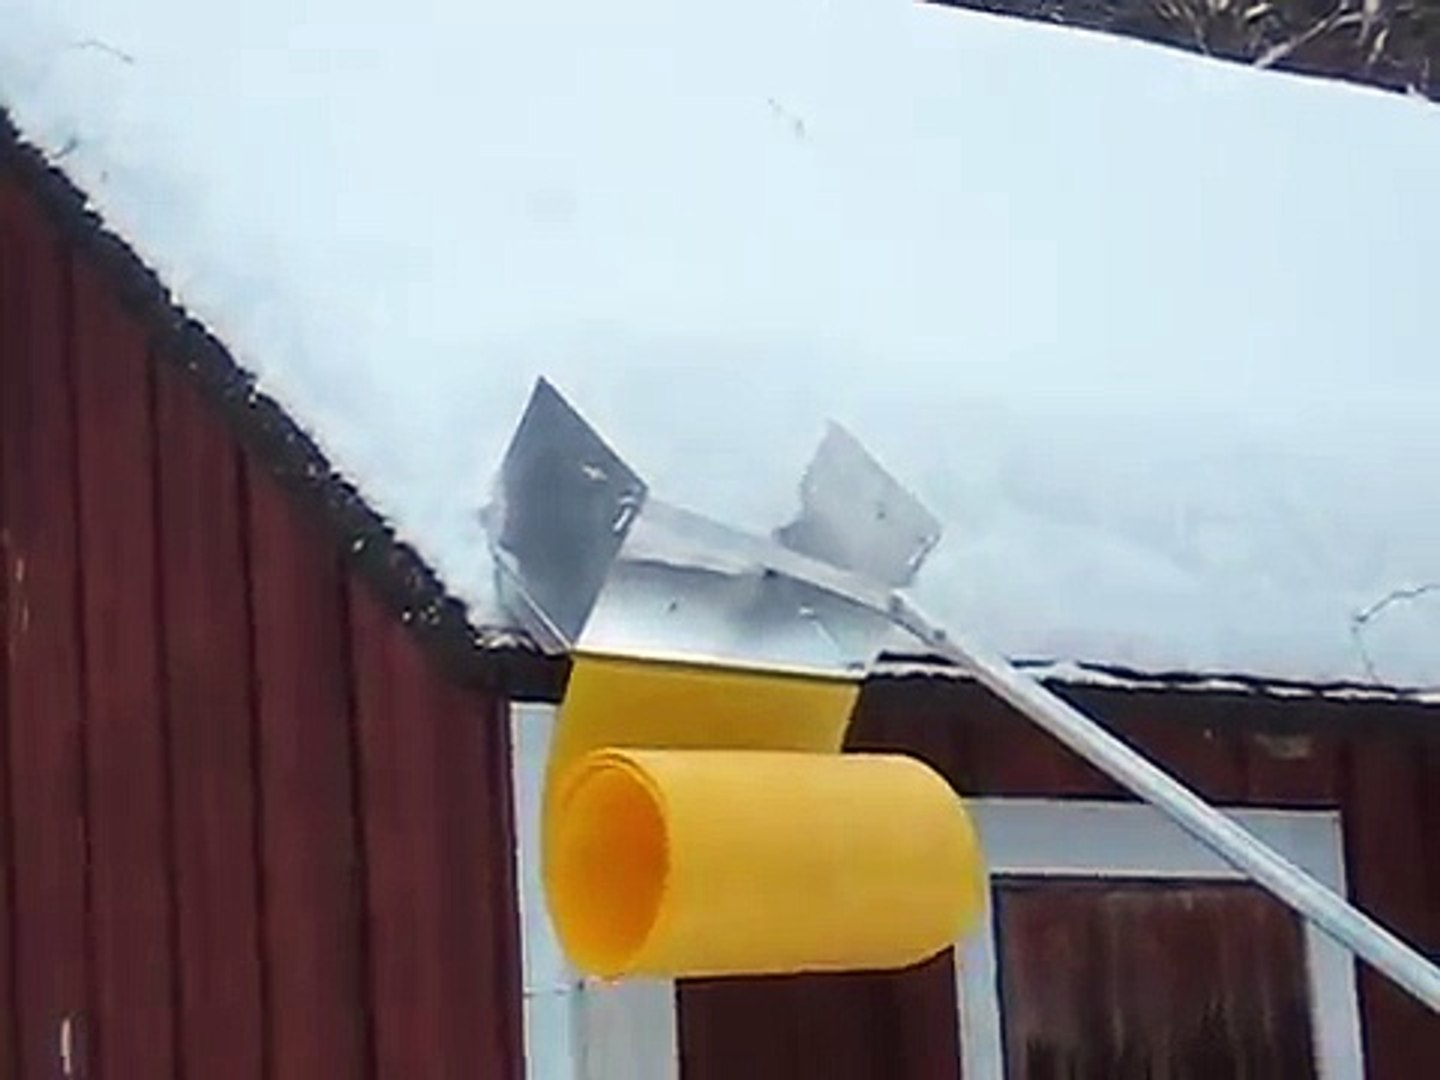 Un râteau pour faire glisser la neige du toit - Vidéo Dailymotion